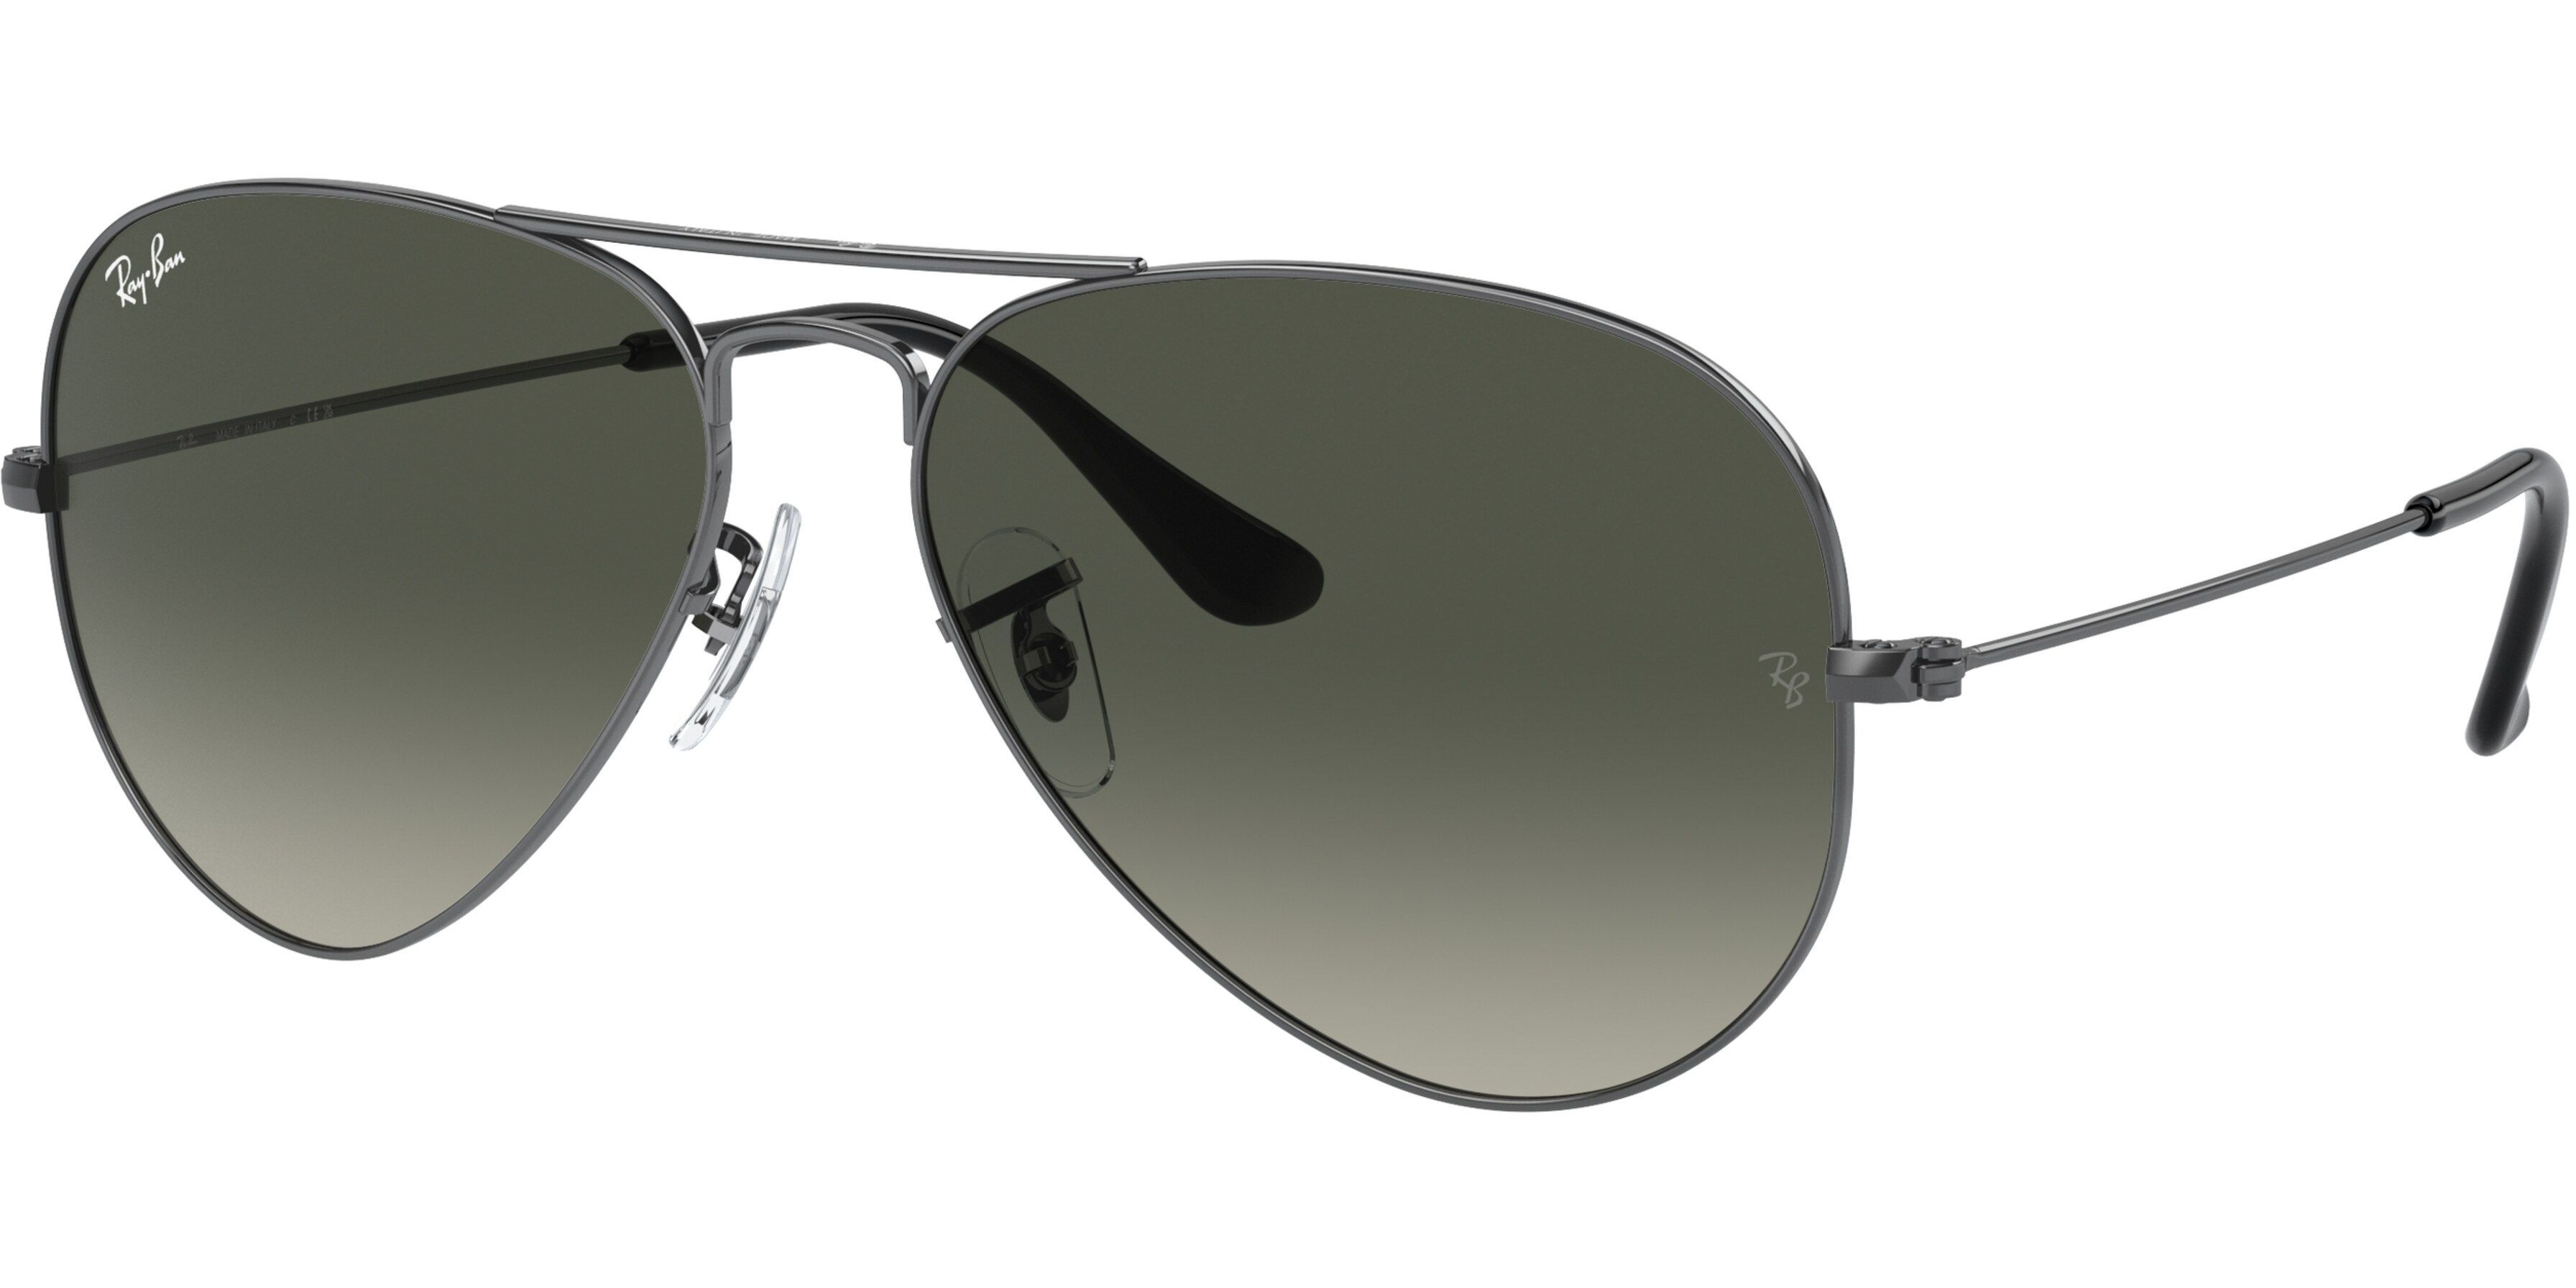 Sluneční brýle Ray-Ban® model 3025, barva obruby šedá lesk, čočka šedá gradál, kód barevné varianty 00471. 